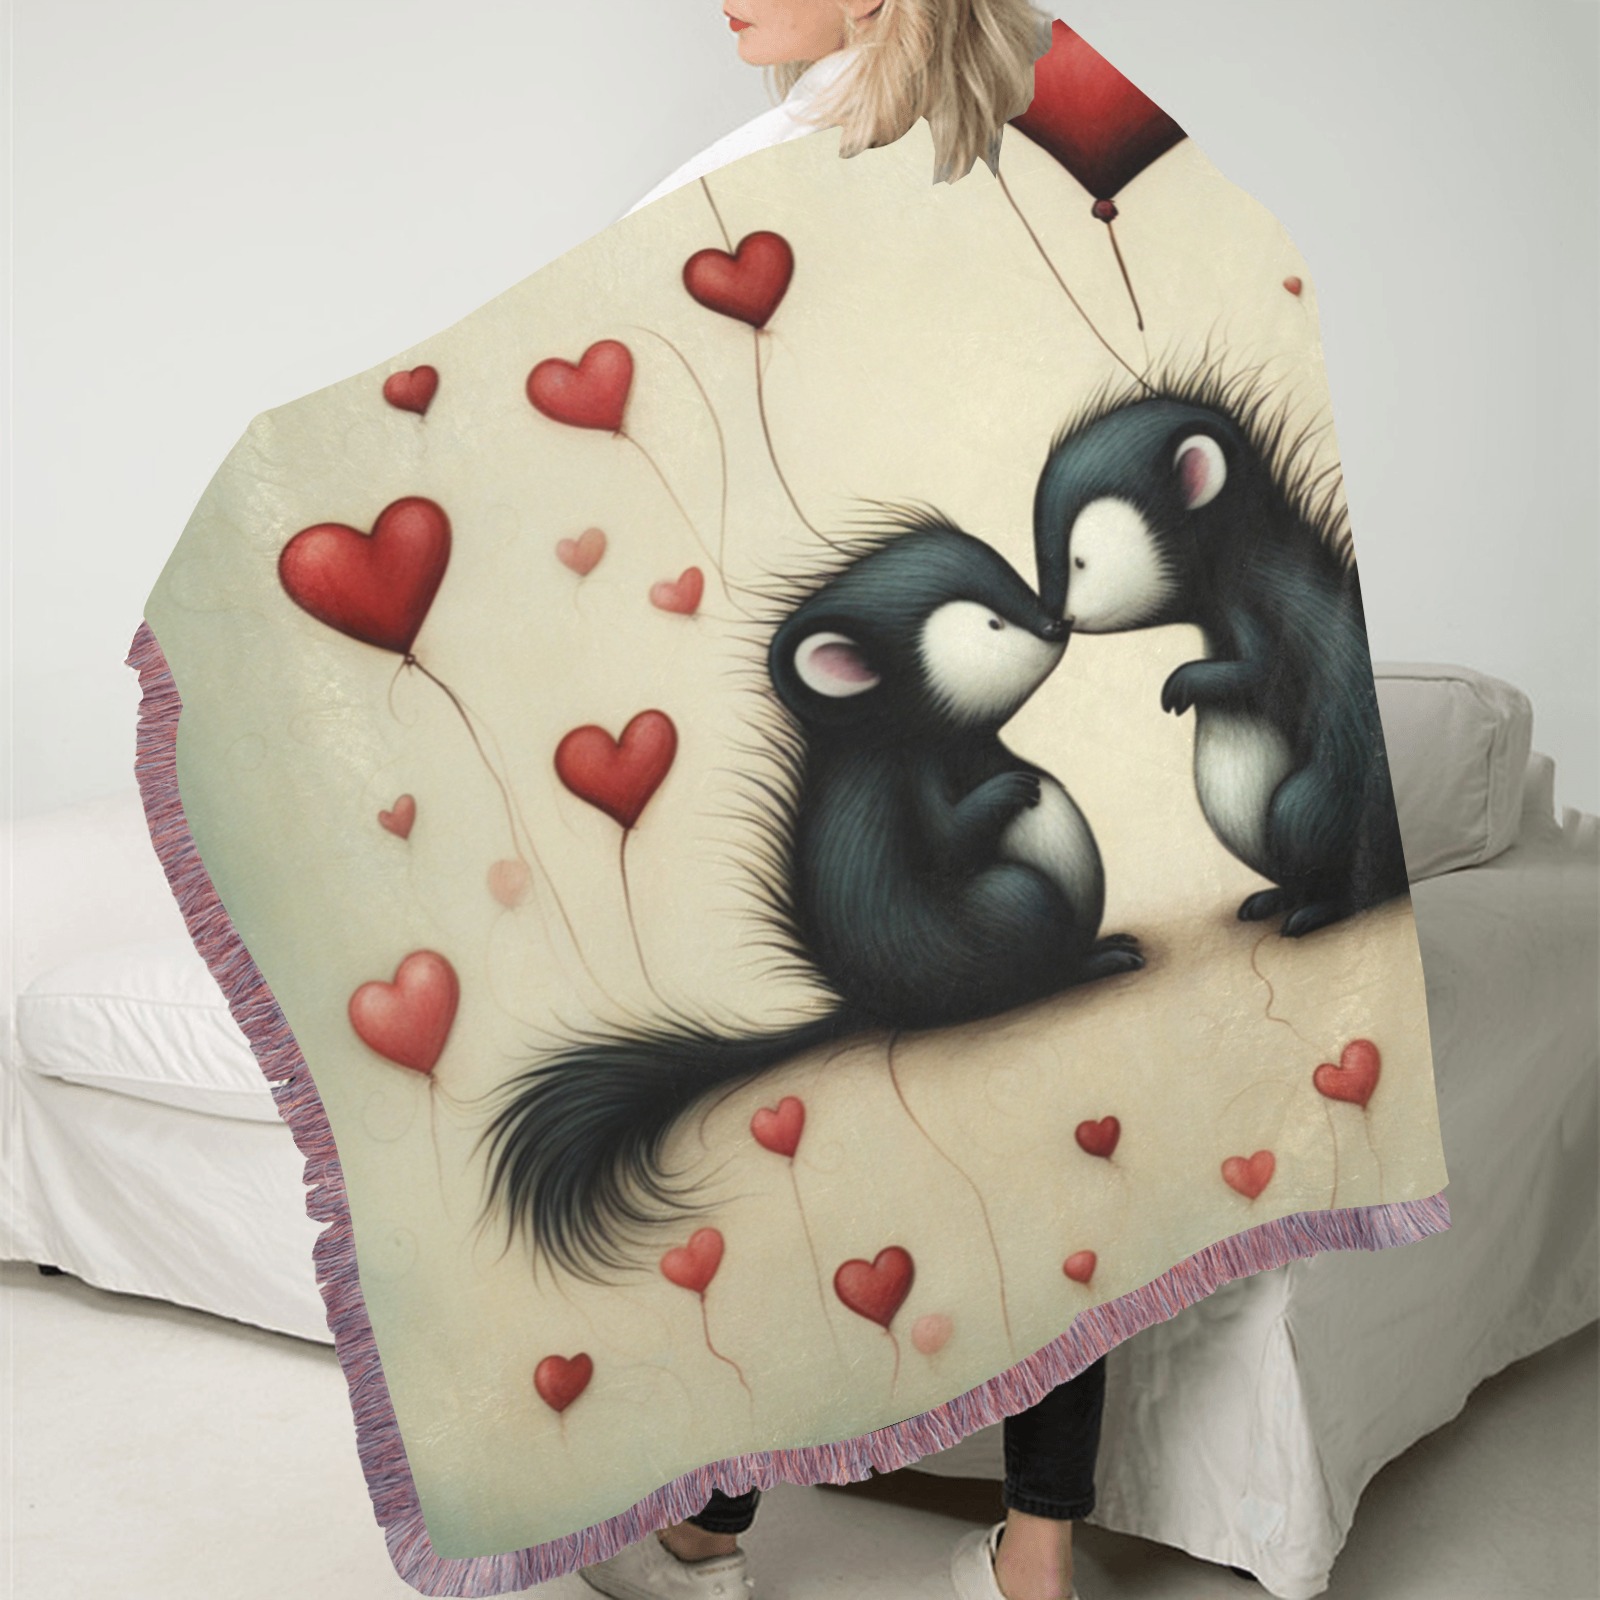 Skunk Love 1 Ultra-Soft Fringe Blanket 30"x40" (Mixed Pink)